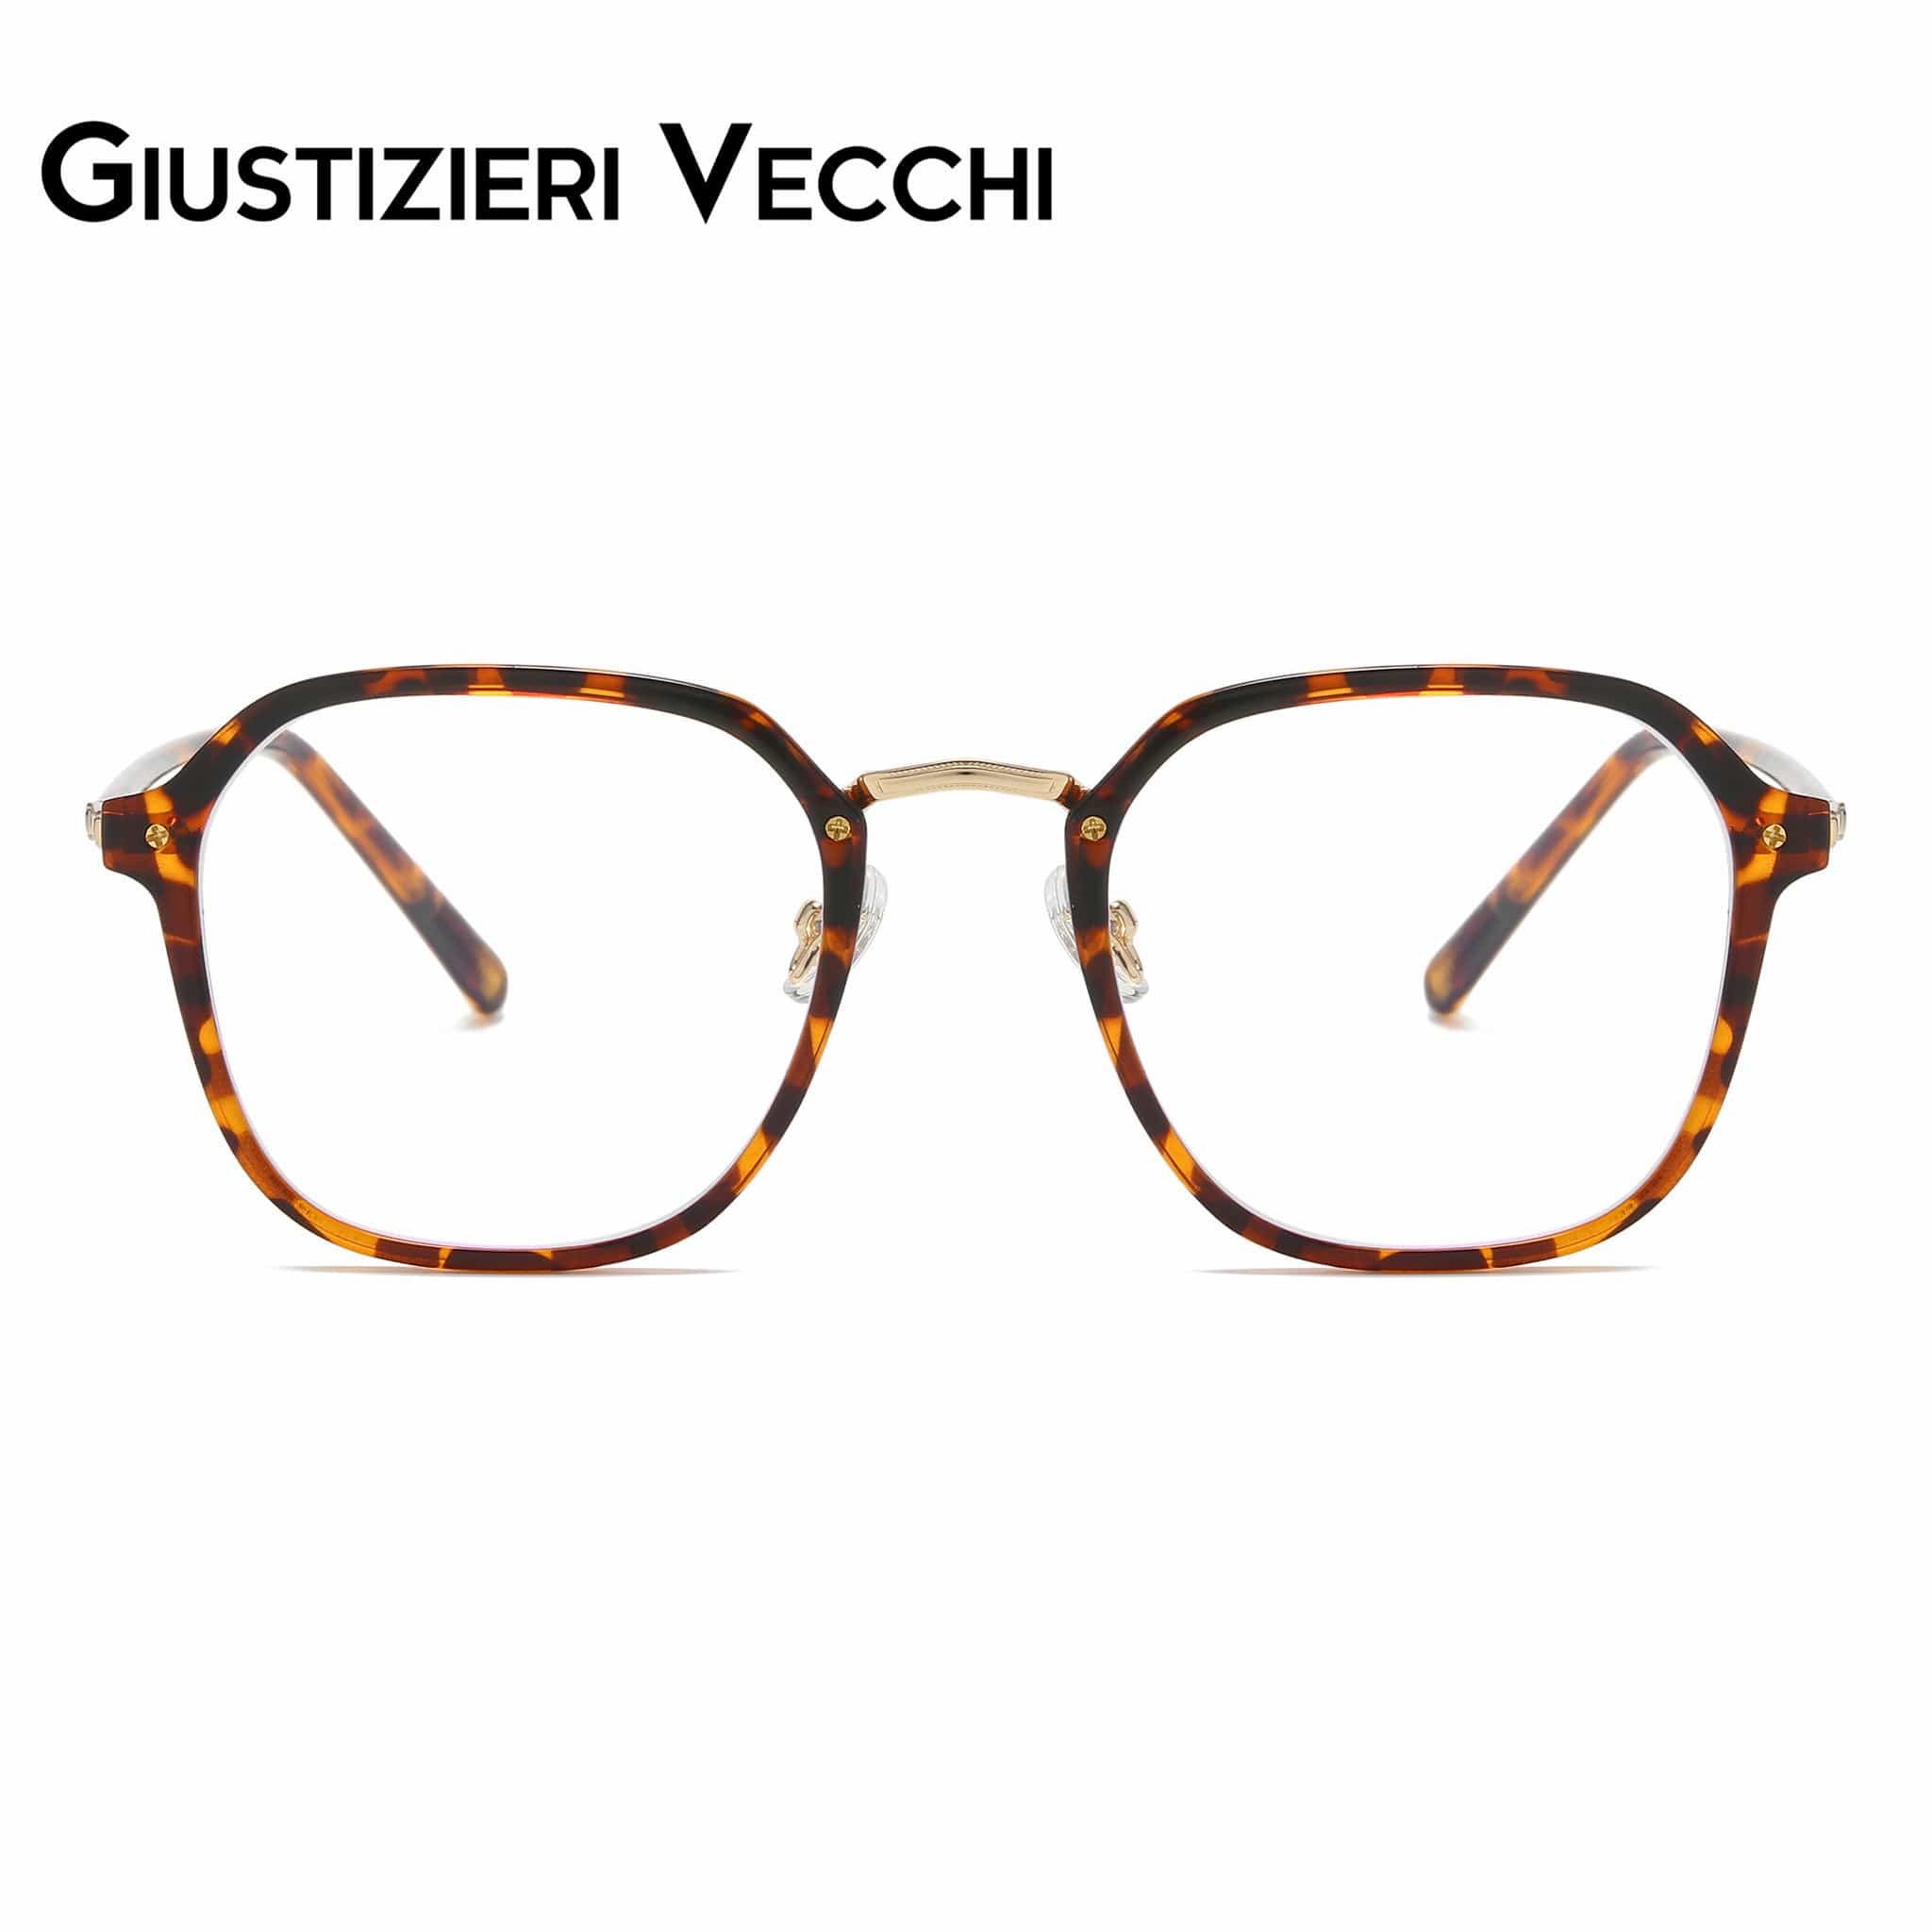 GIUSTIZIERI VECCHI Eyeglasses Small / Brown Tortoise ModaChic Duo